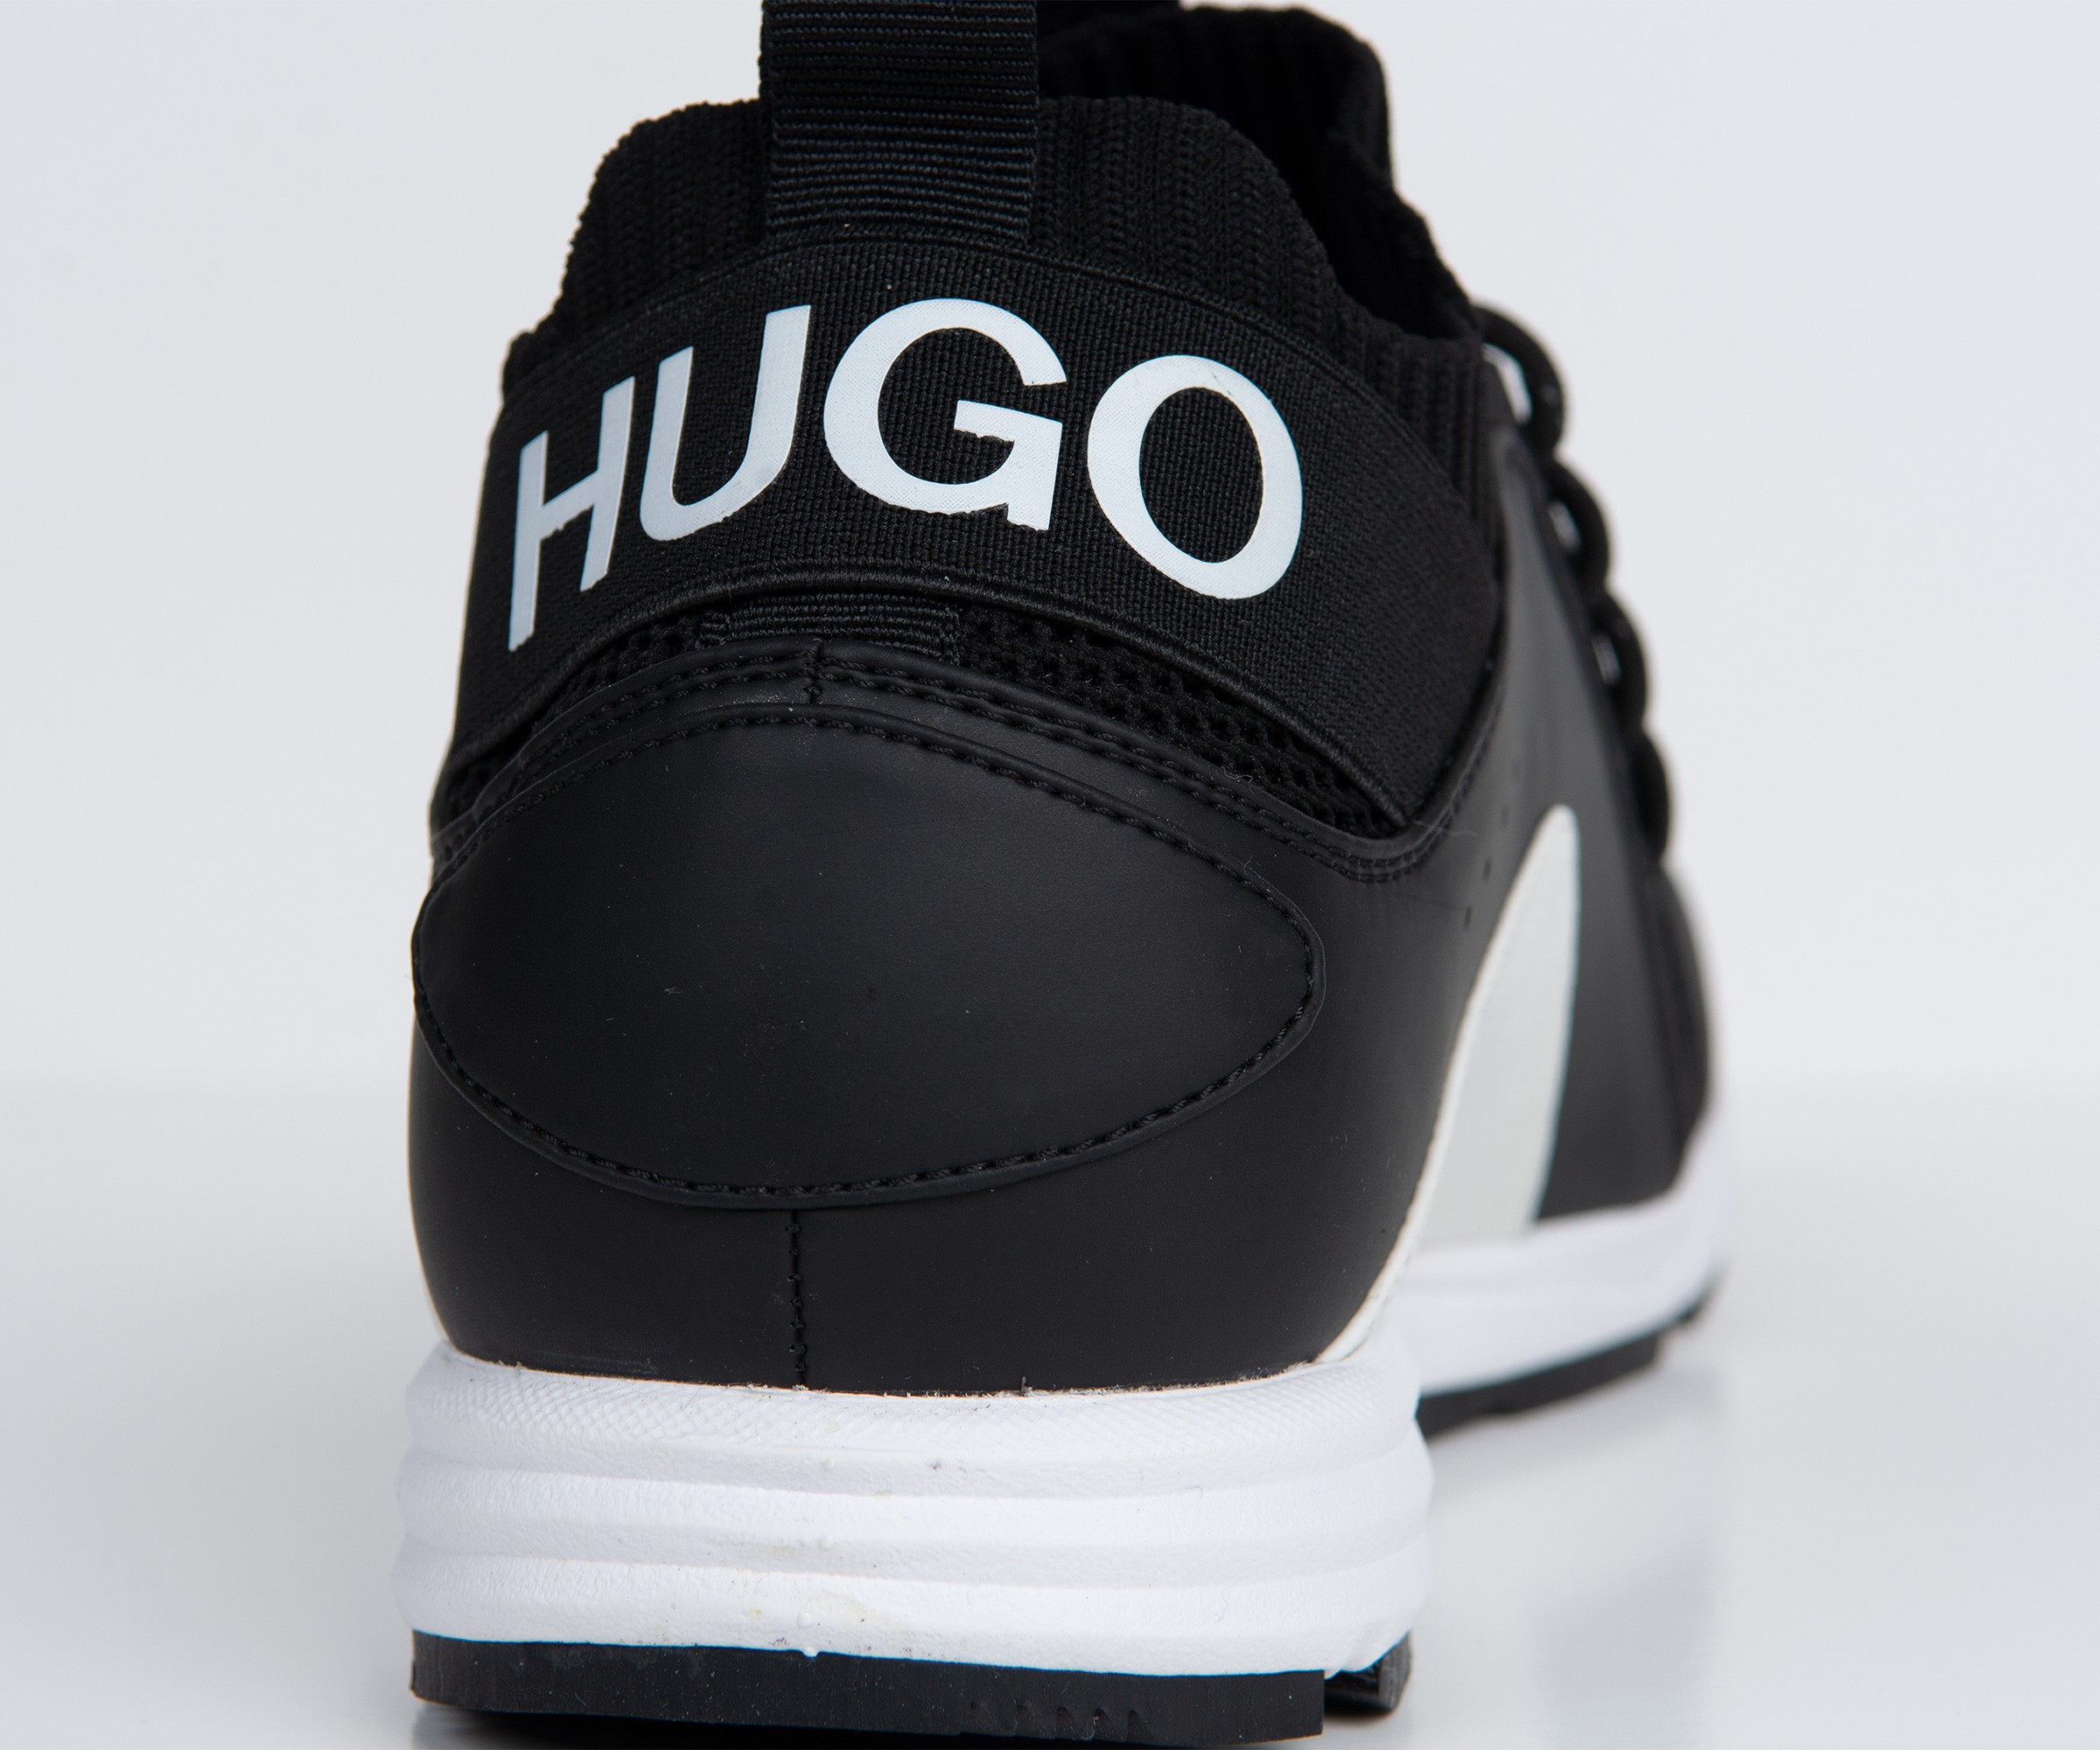 Hugo Boss Hugo Hybrid_Runn_Knmx Trainer in Black